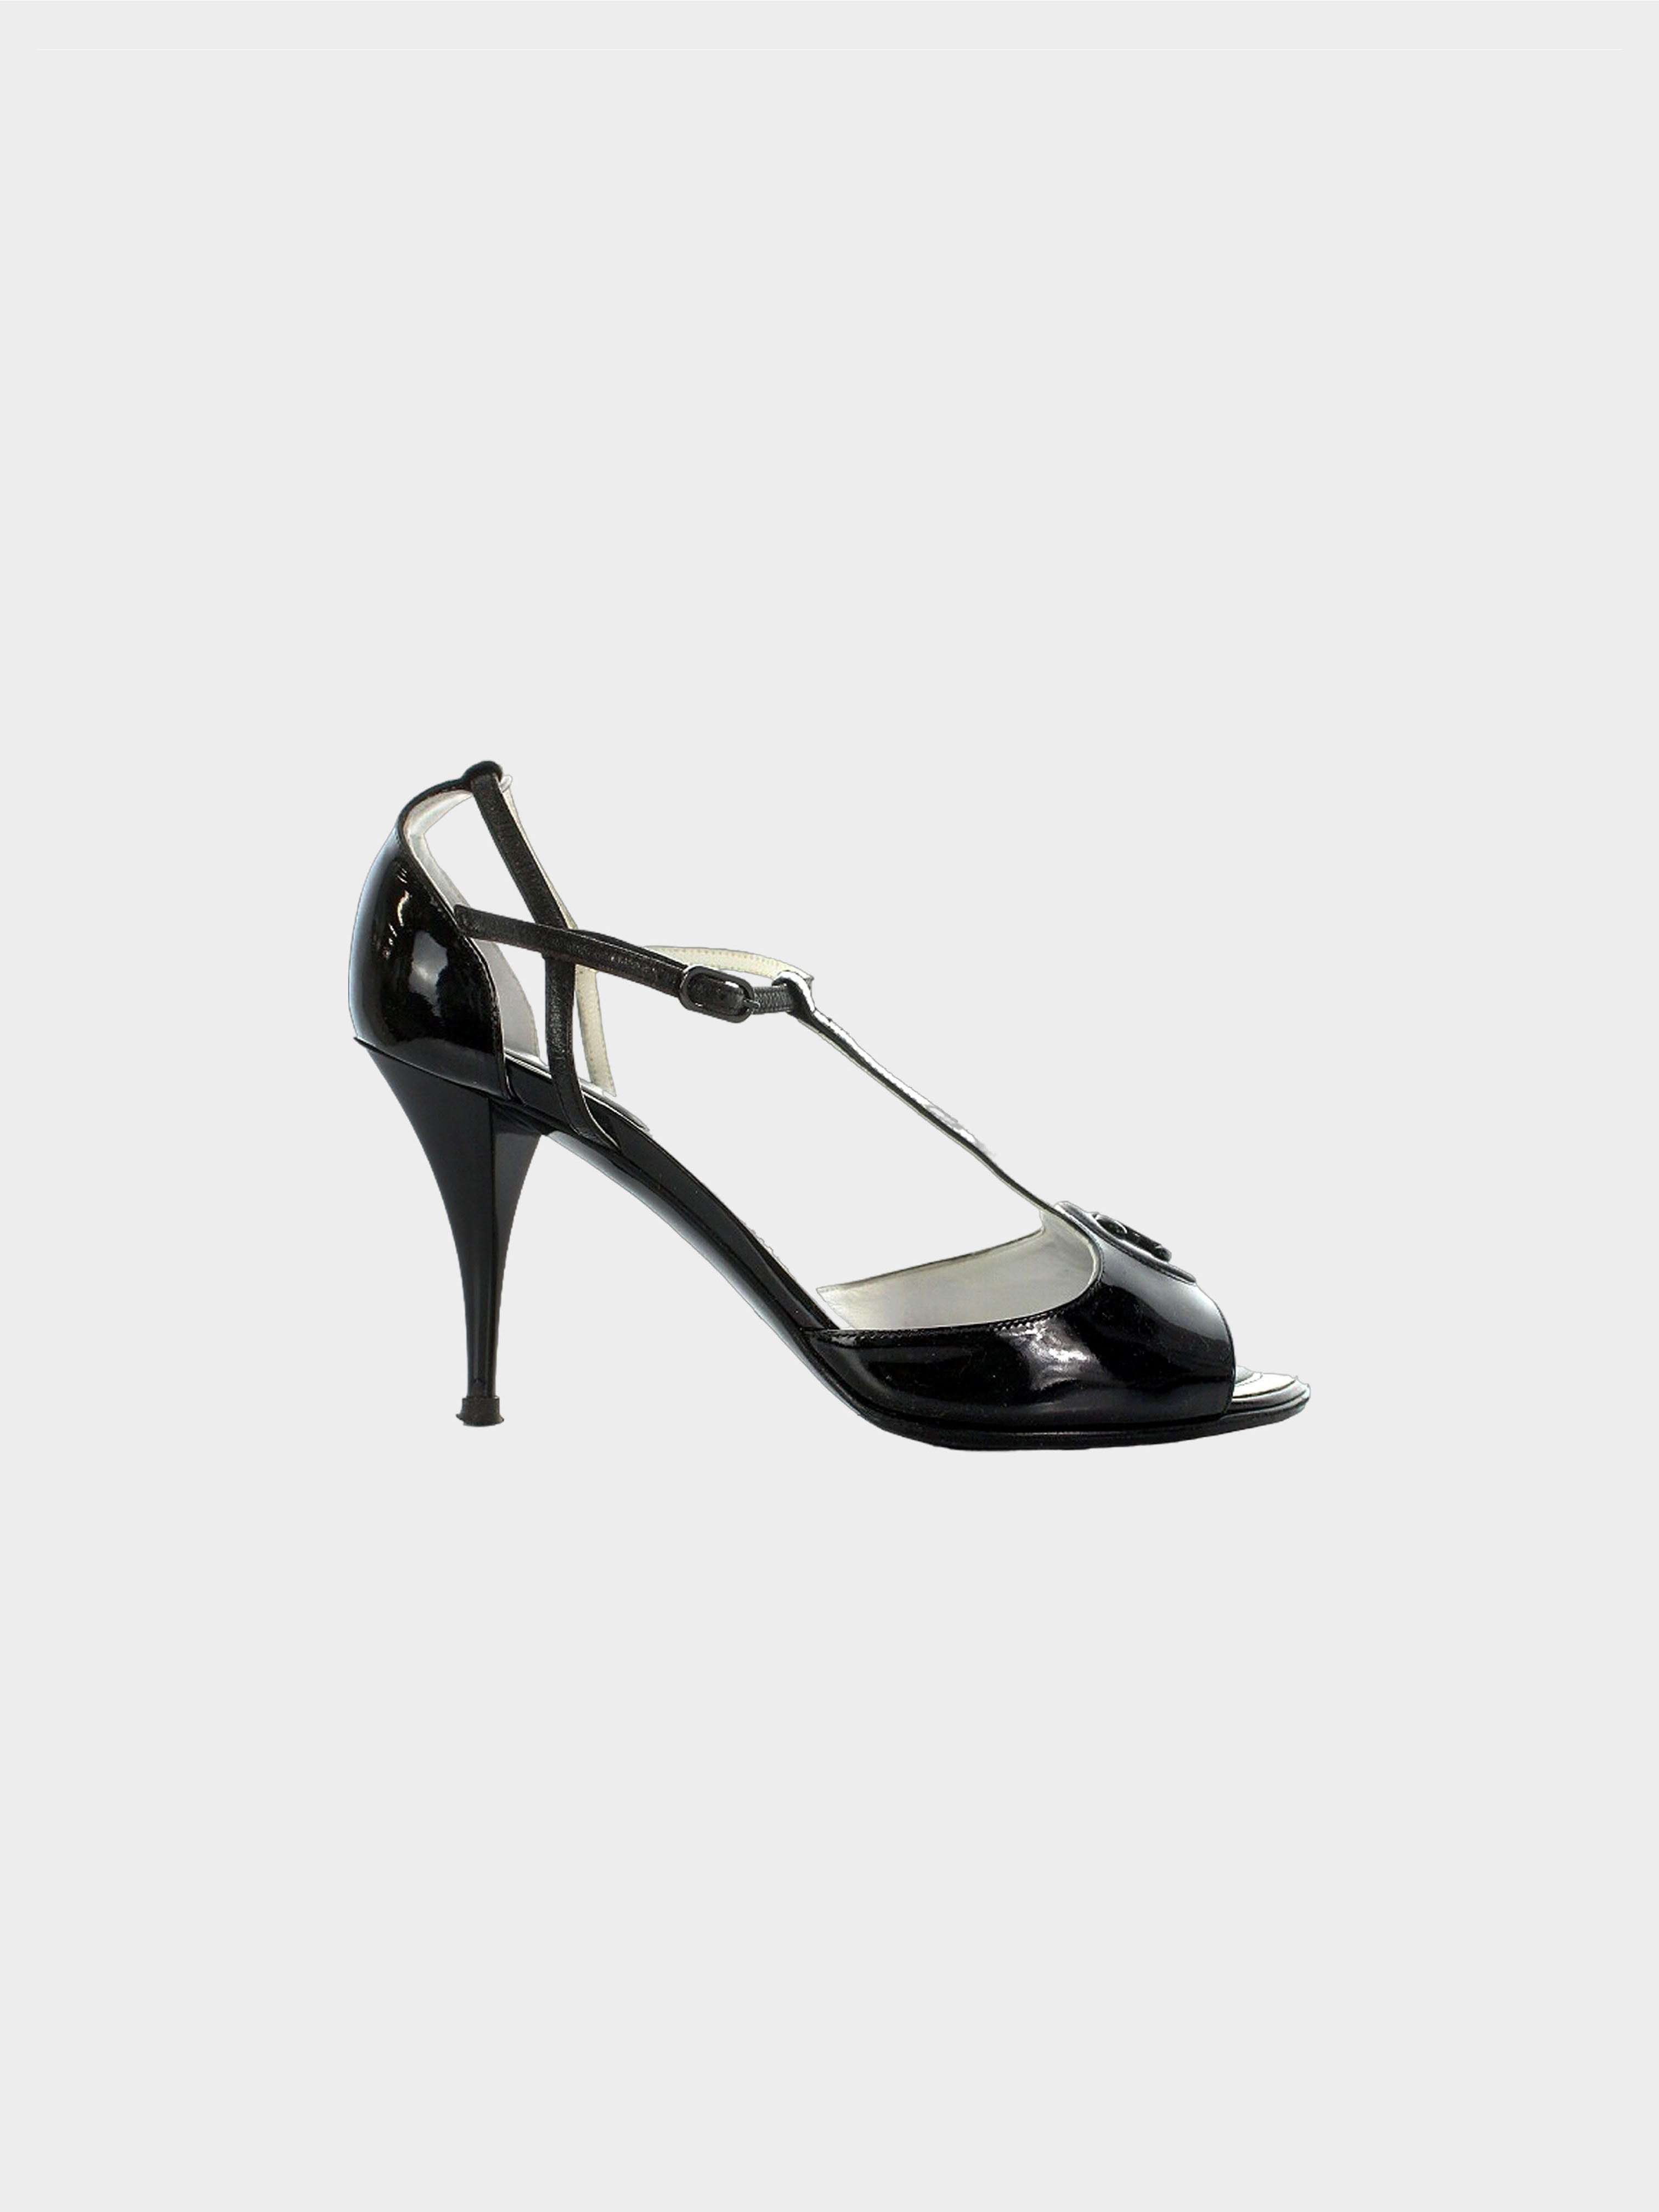 Authentic Vintage Chanel Black Shoes Heels Size 7.5 10020 